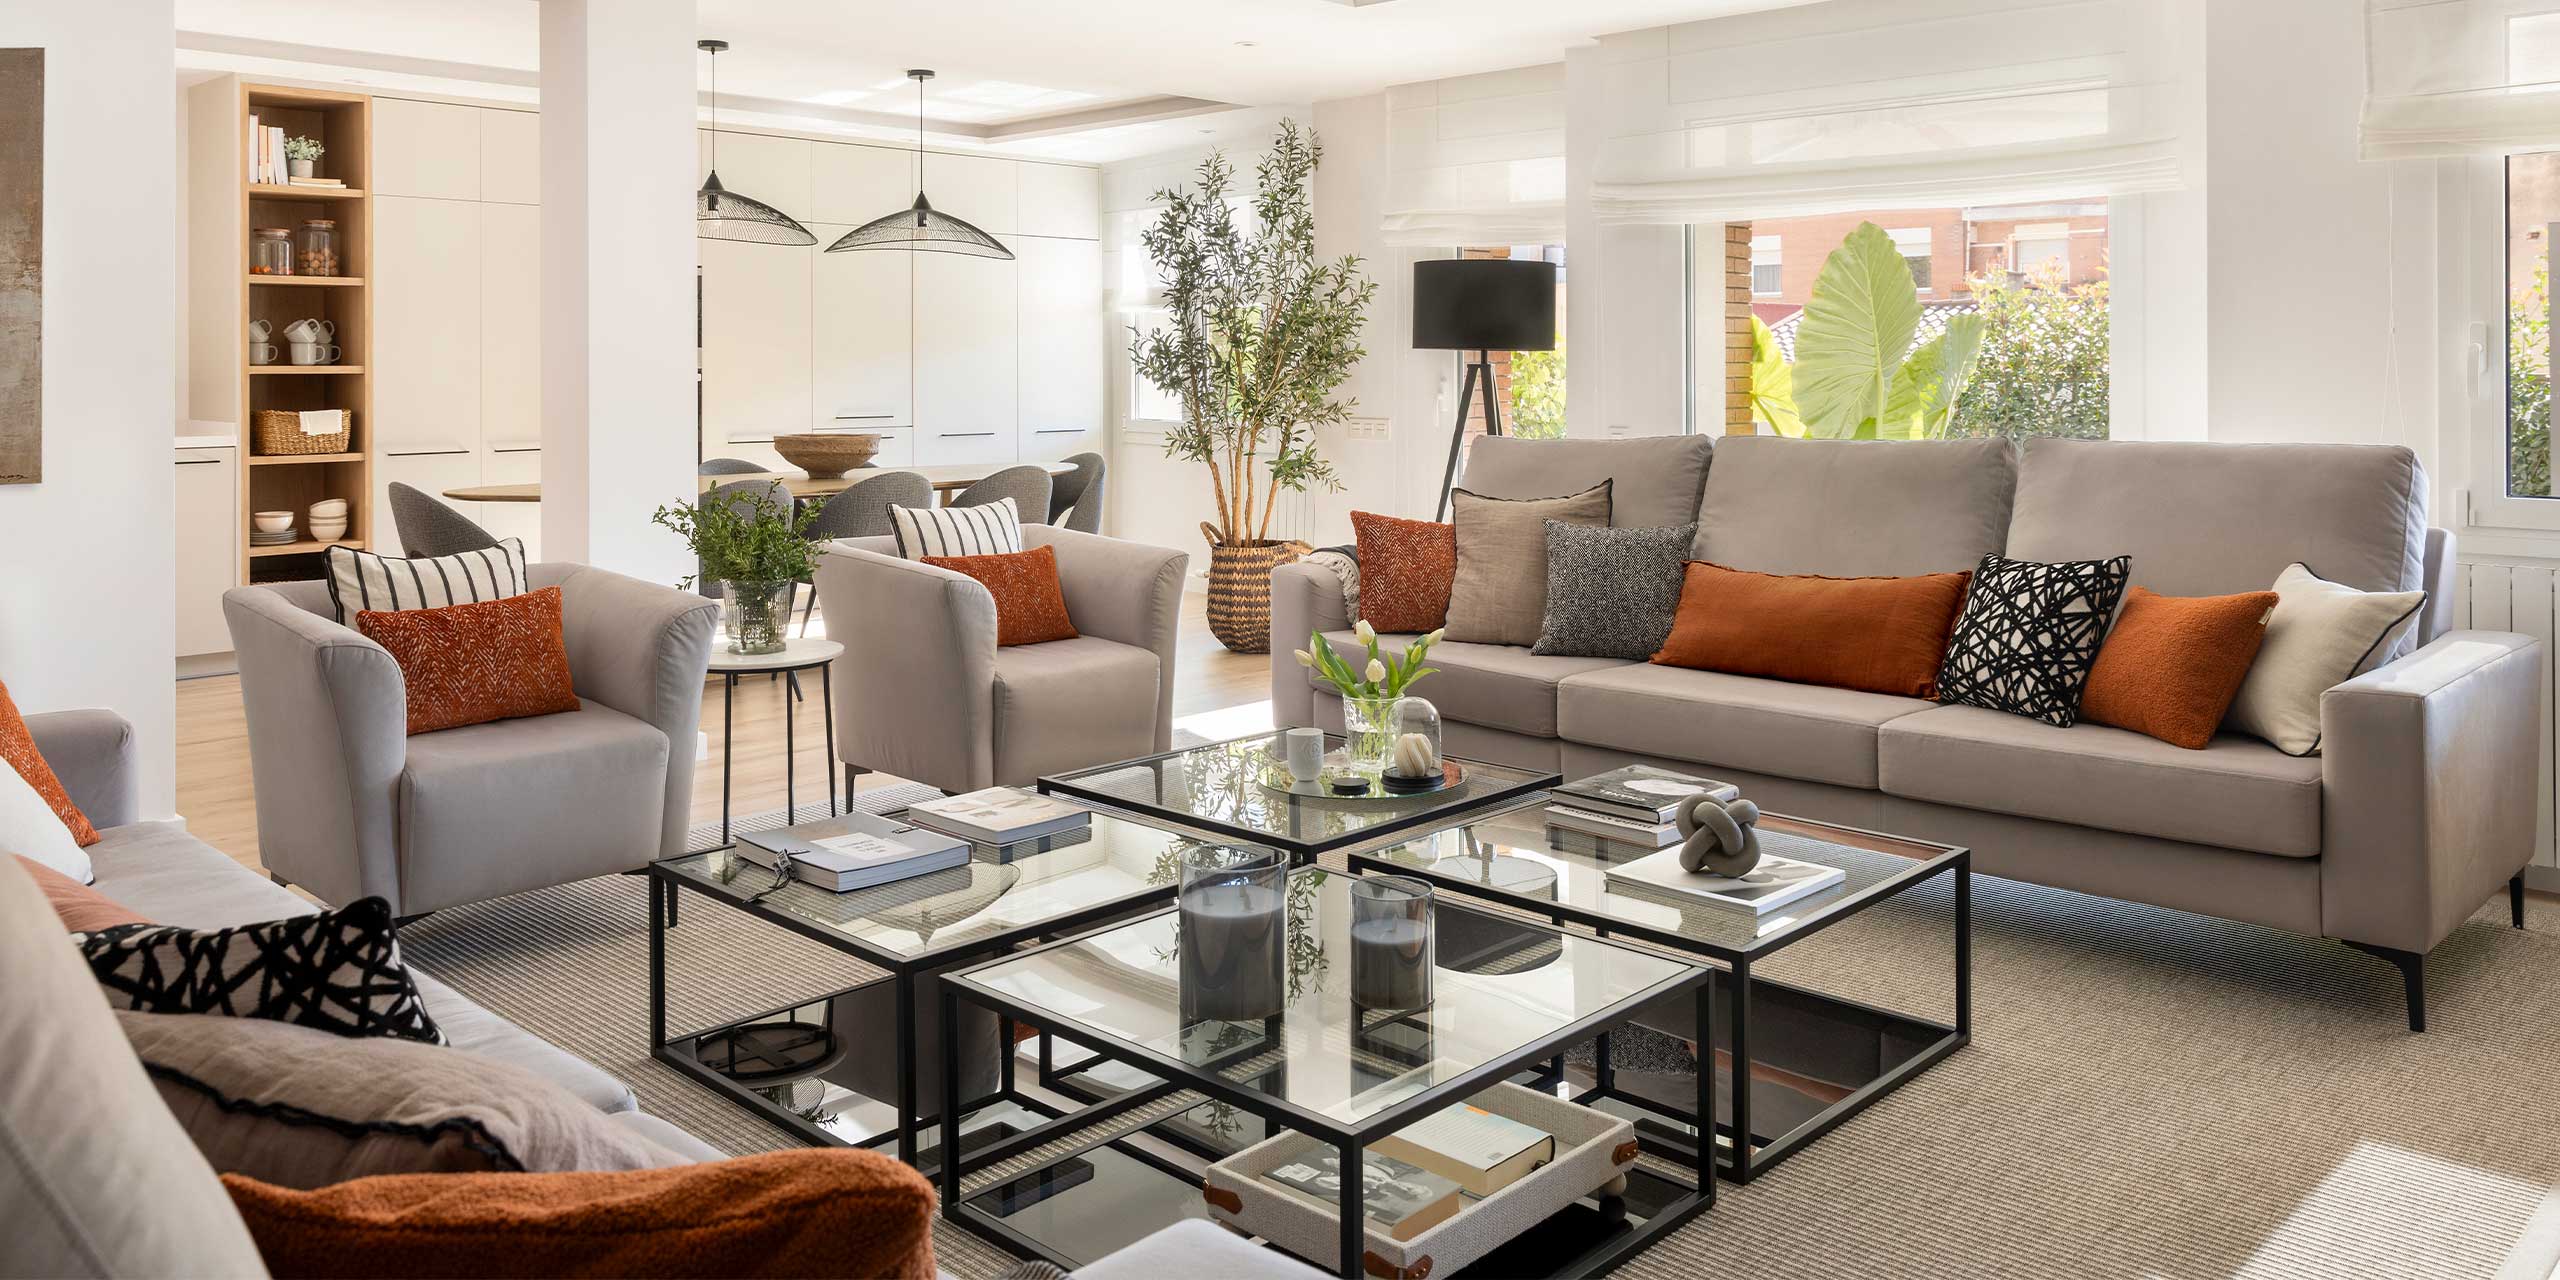 Interior design spacious living room with sofas